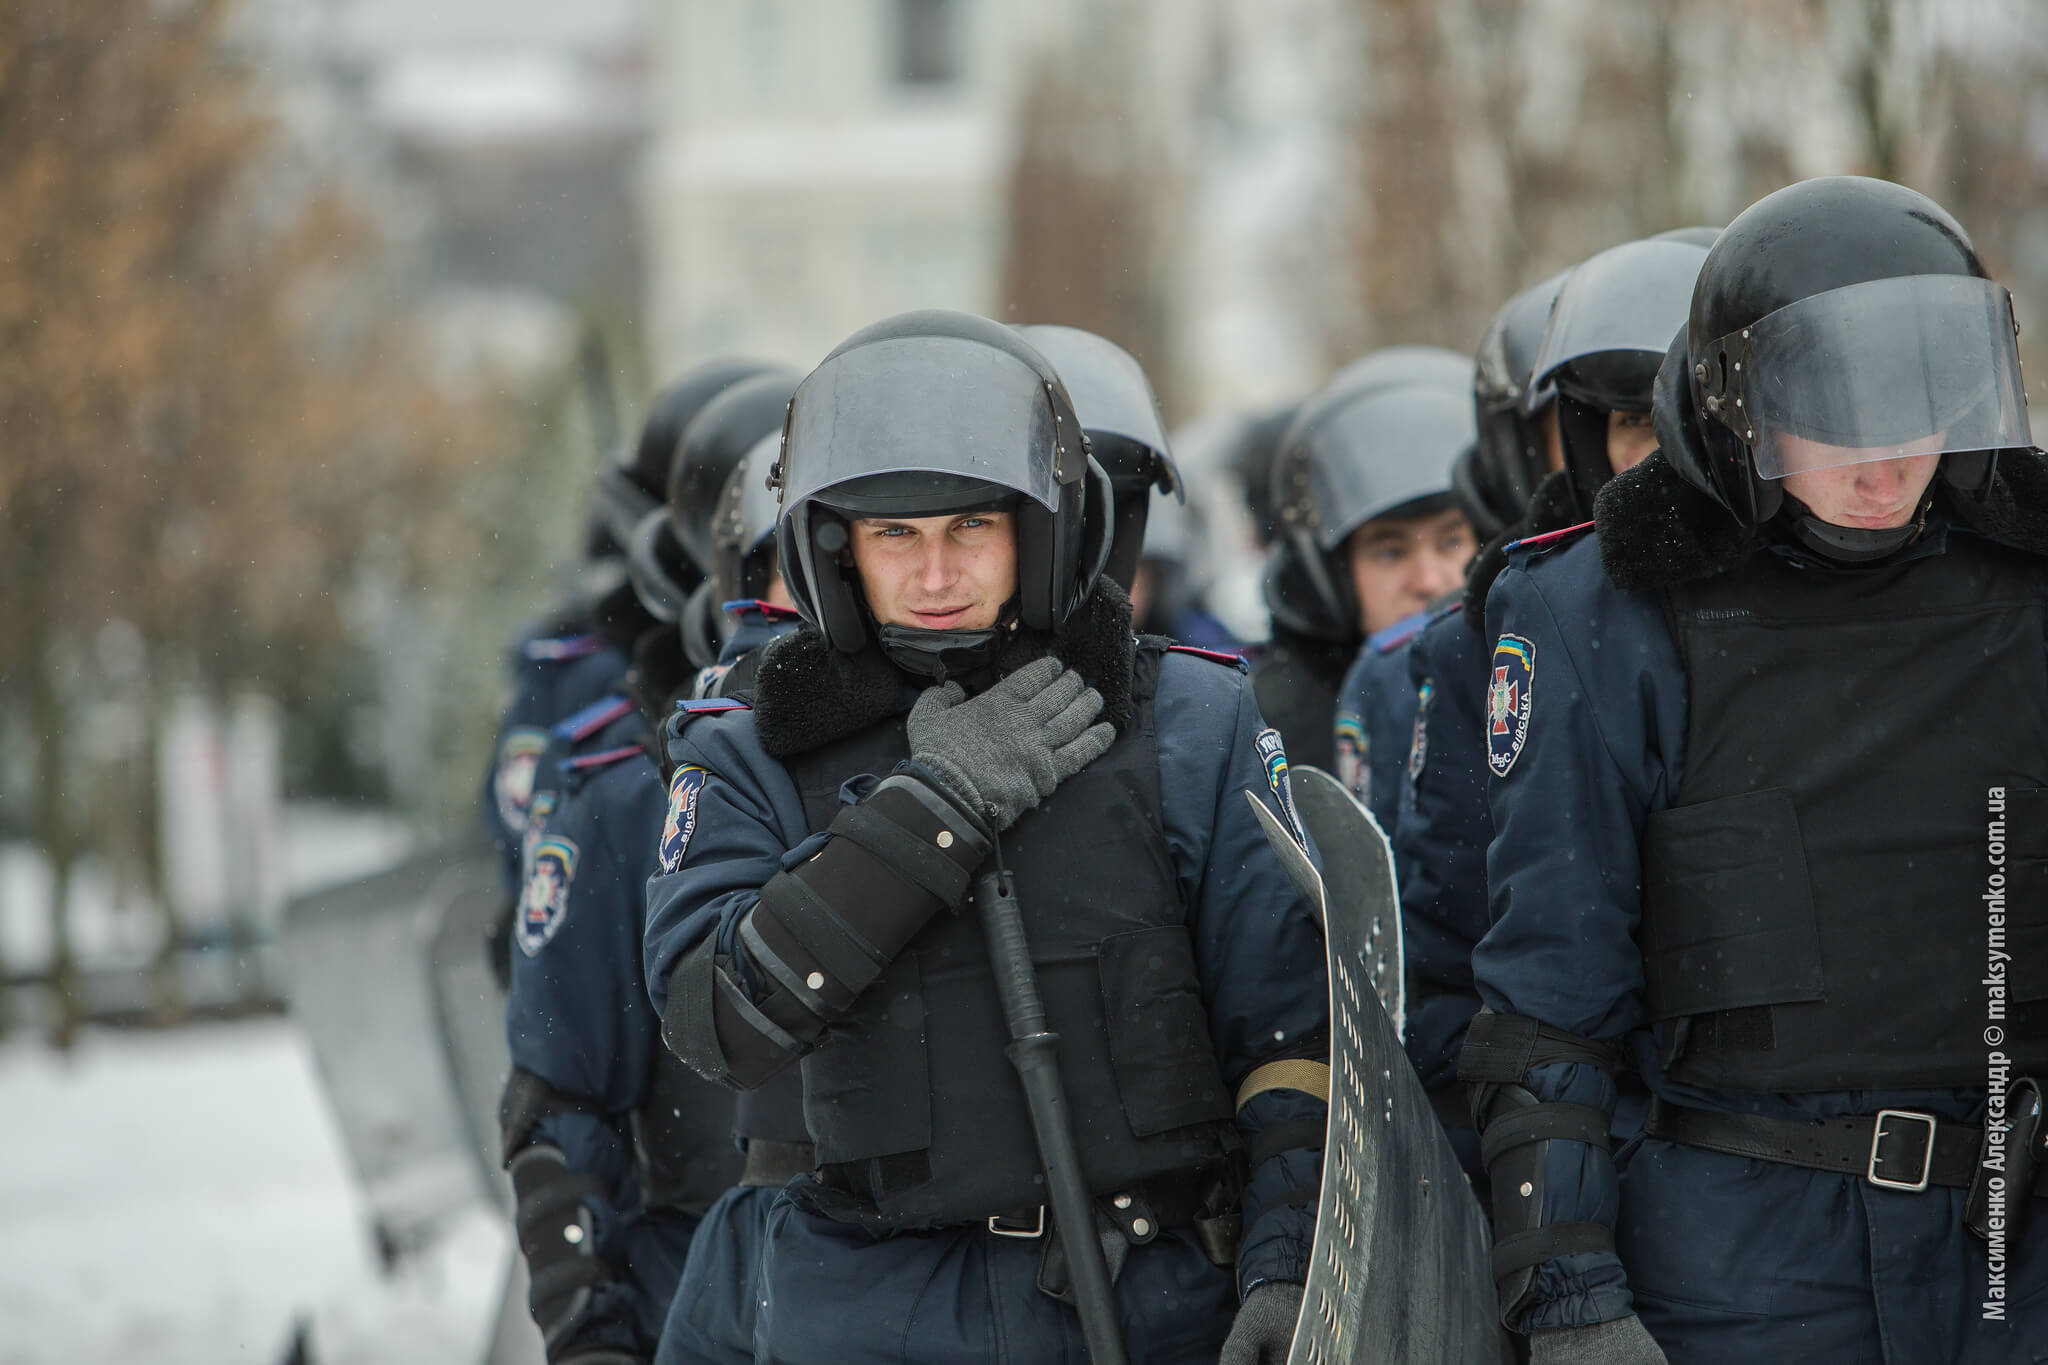 Oekrainse politie tijdens de protesten op het Maidanplein in Kiev, december 2013. Bron: Sasha Maksymenko / Flickr